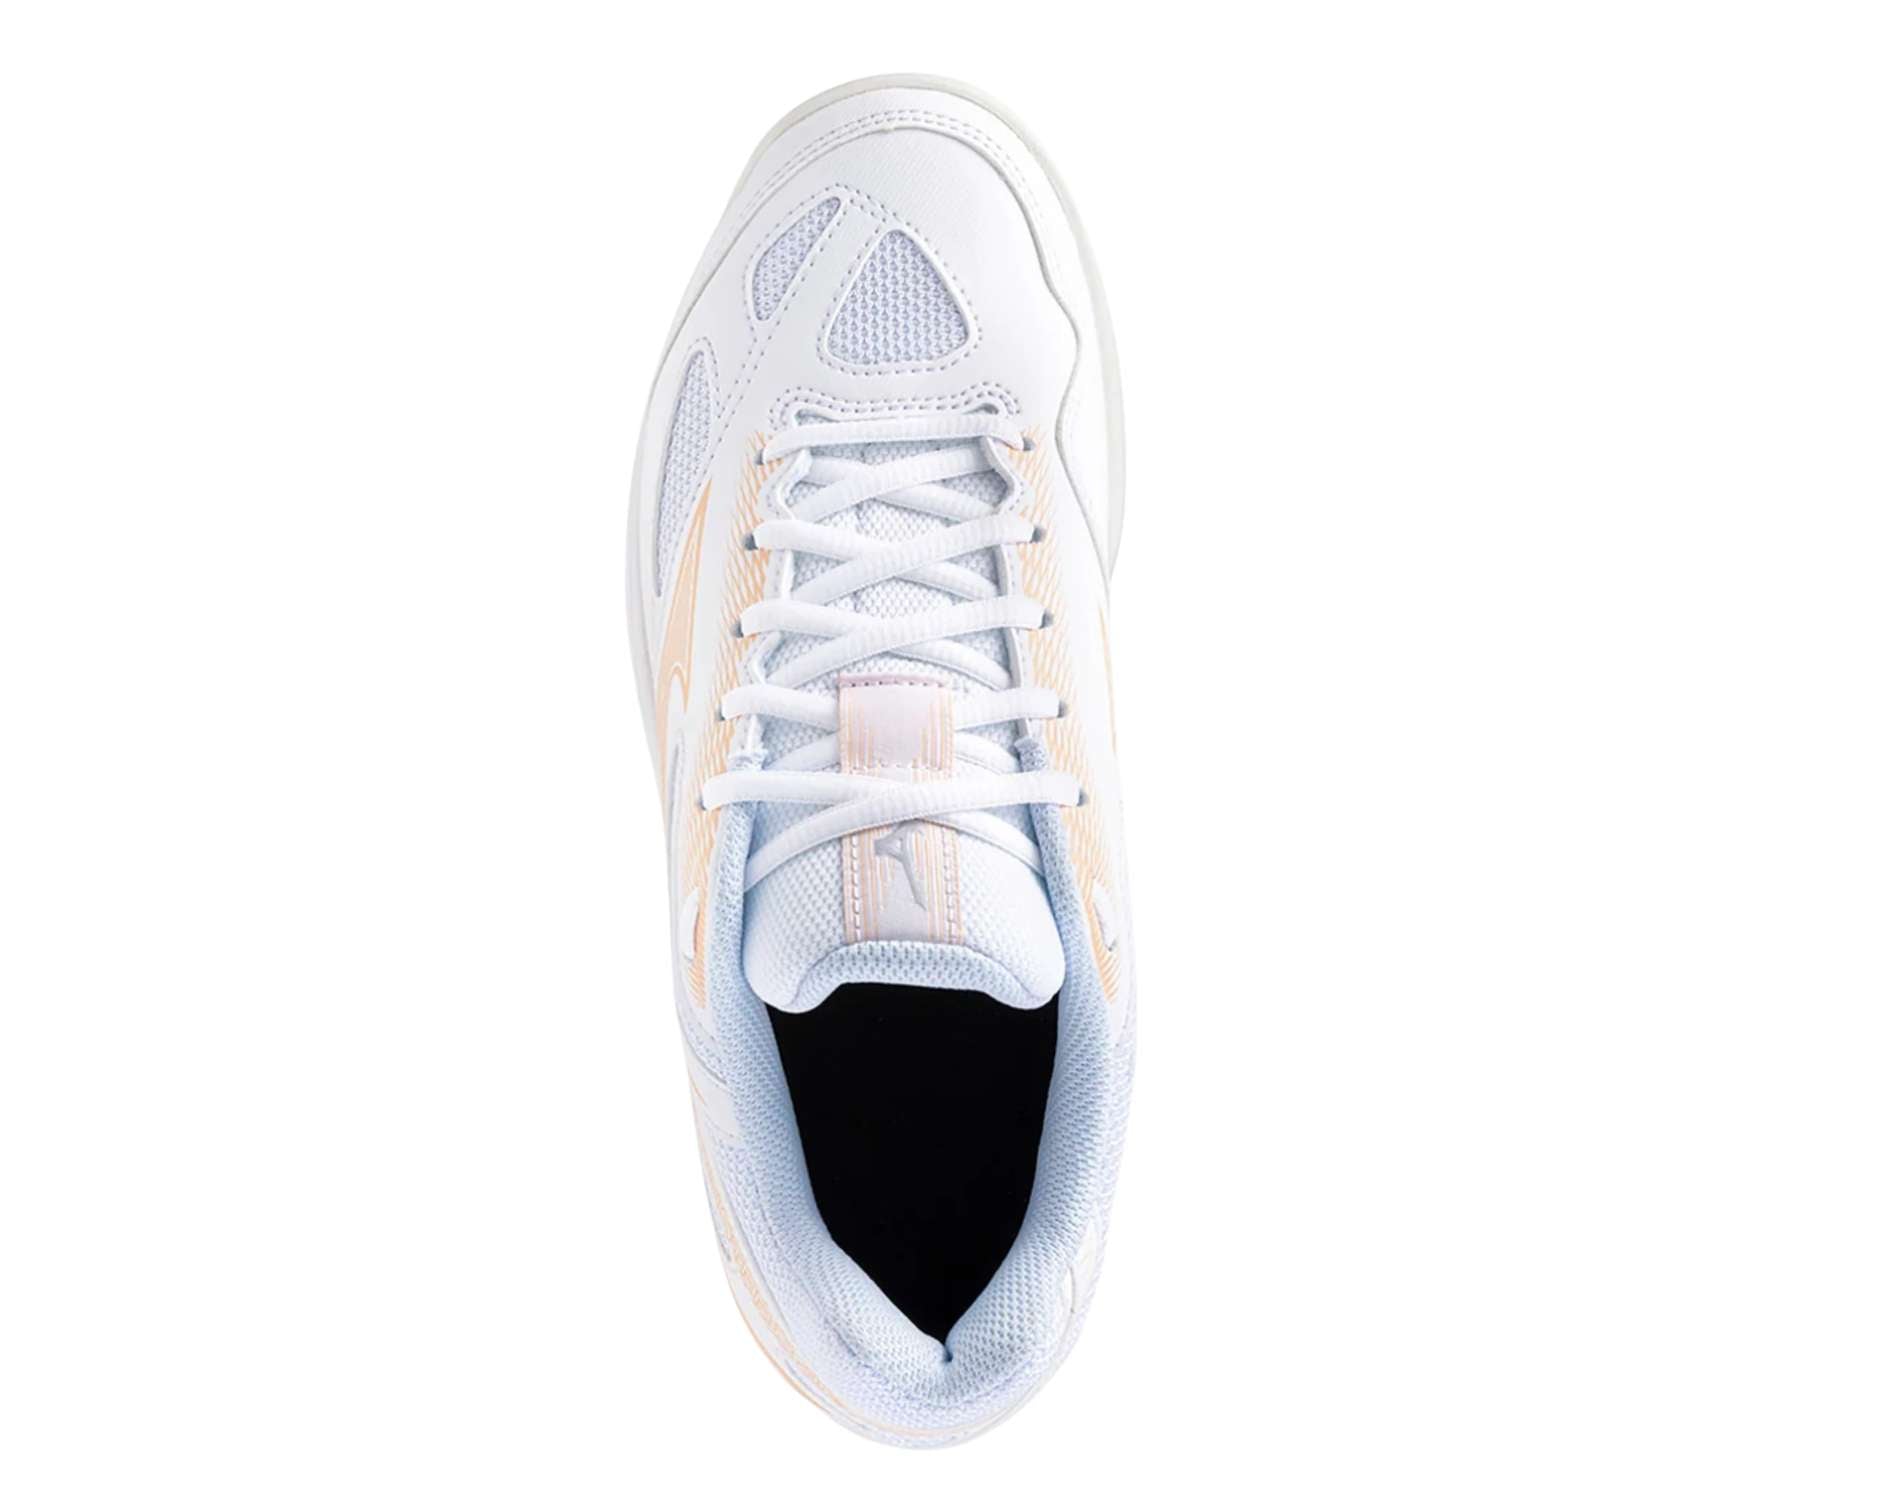 Mizuno Stealth Star Jr Kids netball shoes in white peach colour